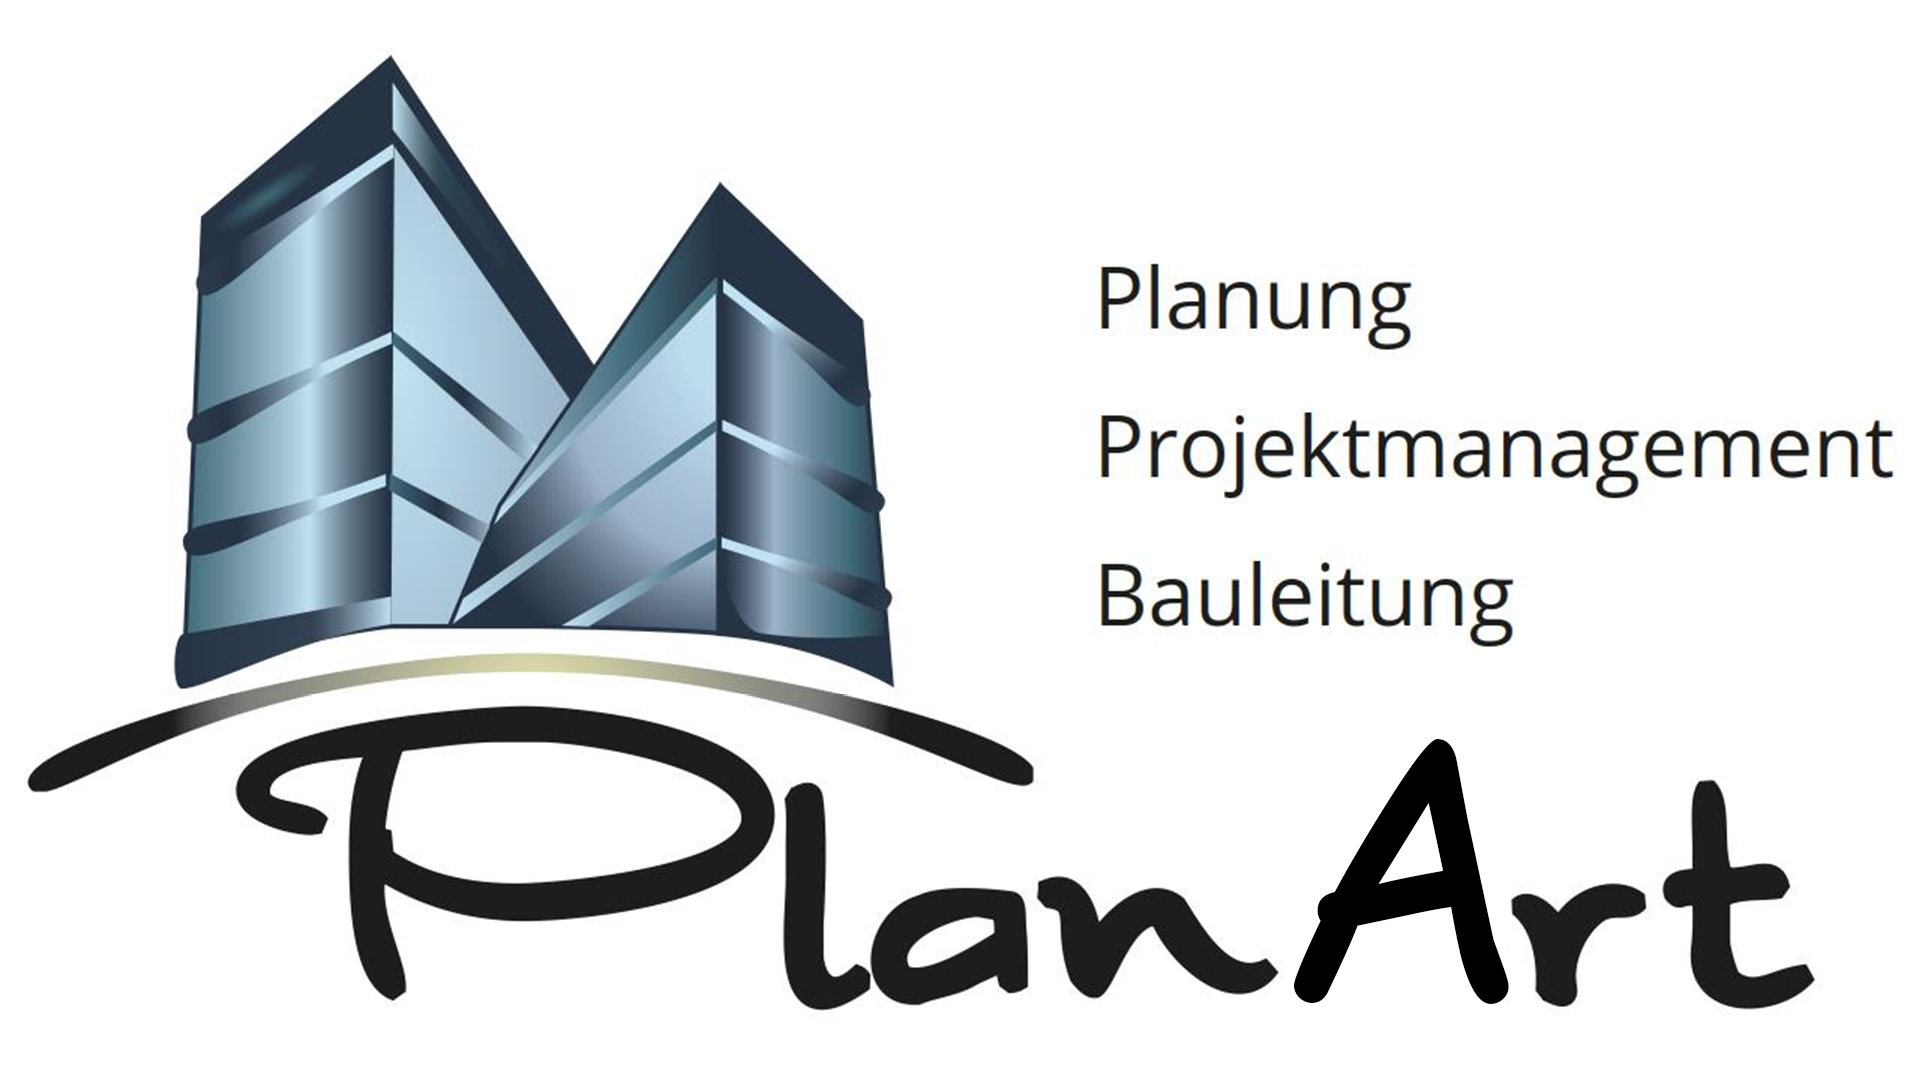 PlanArt – Wir Bauen Zukunft